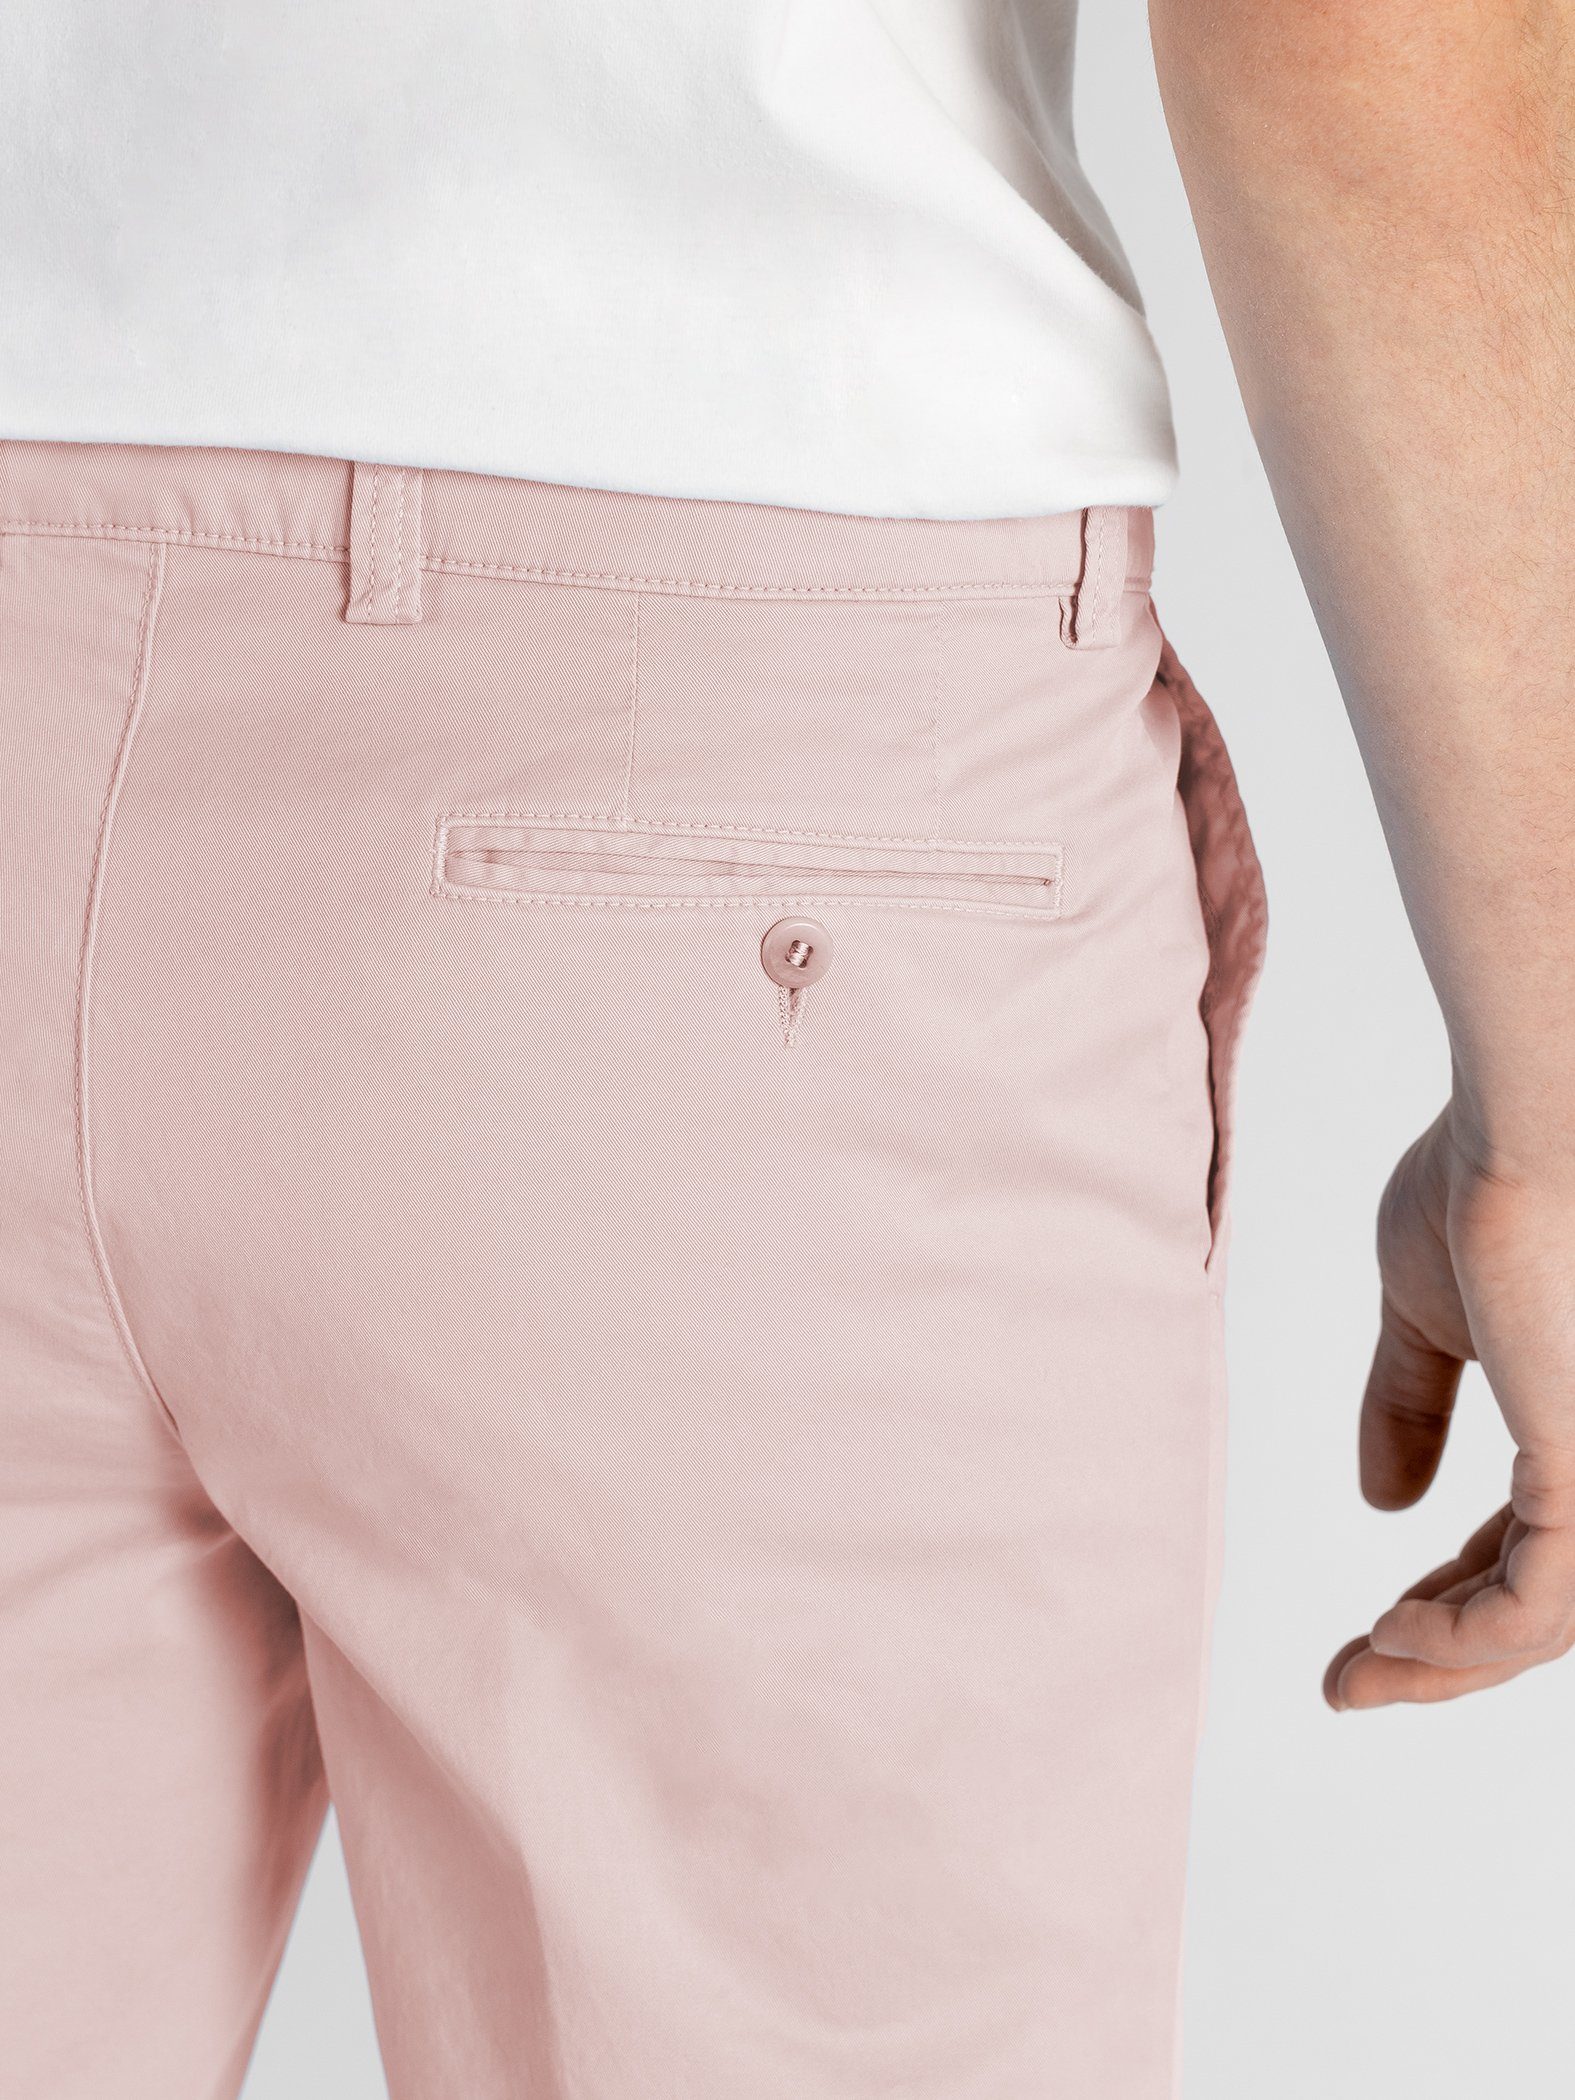 TwoMates Shorts Shorts mit Bund, elastischem rosa Farbauswahl, GOTS-zertifiziert